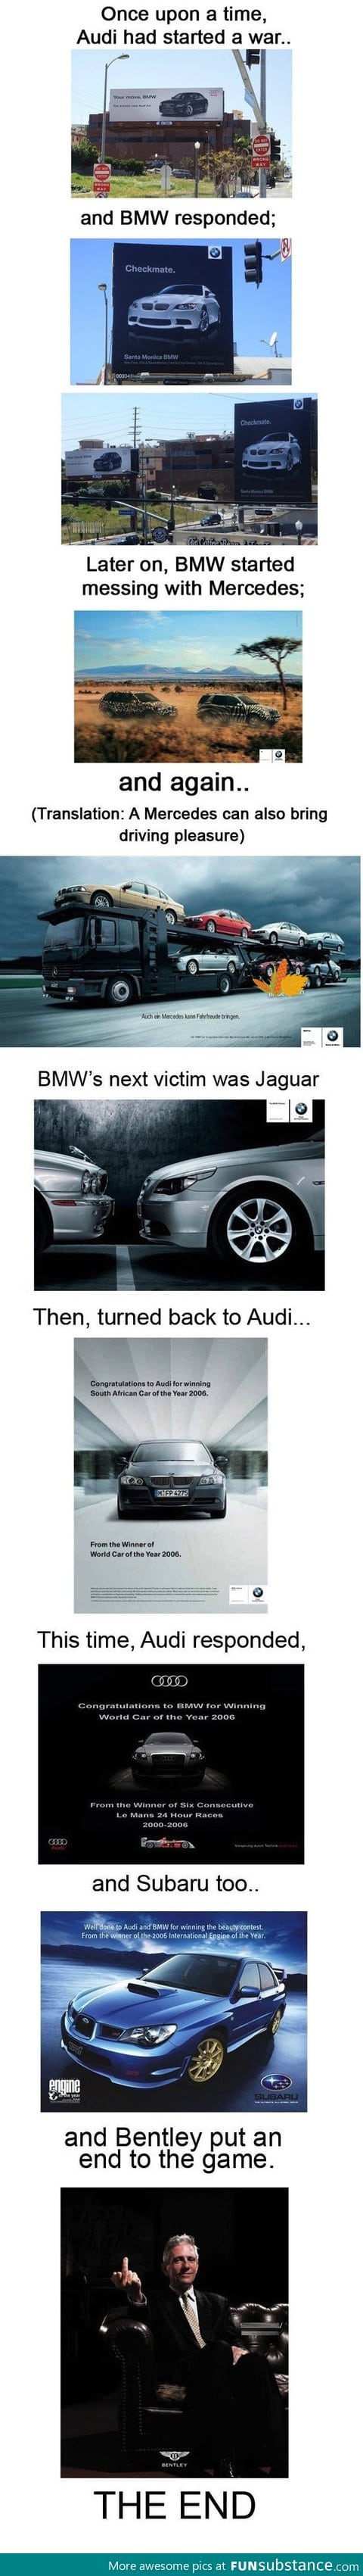 Car ad wars